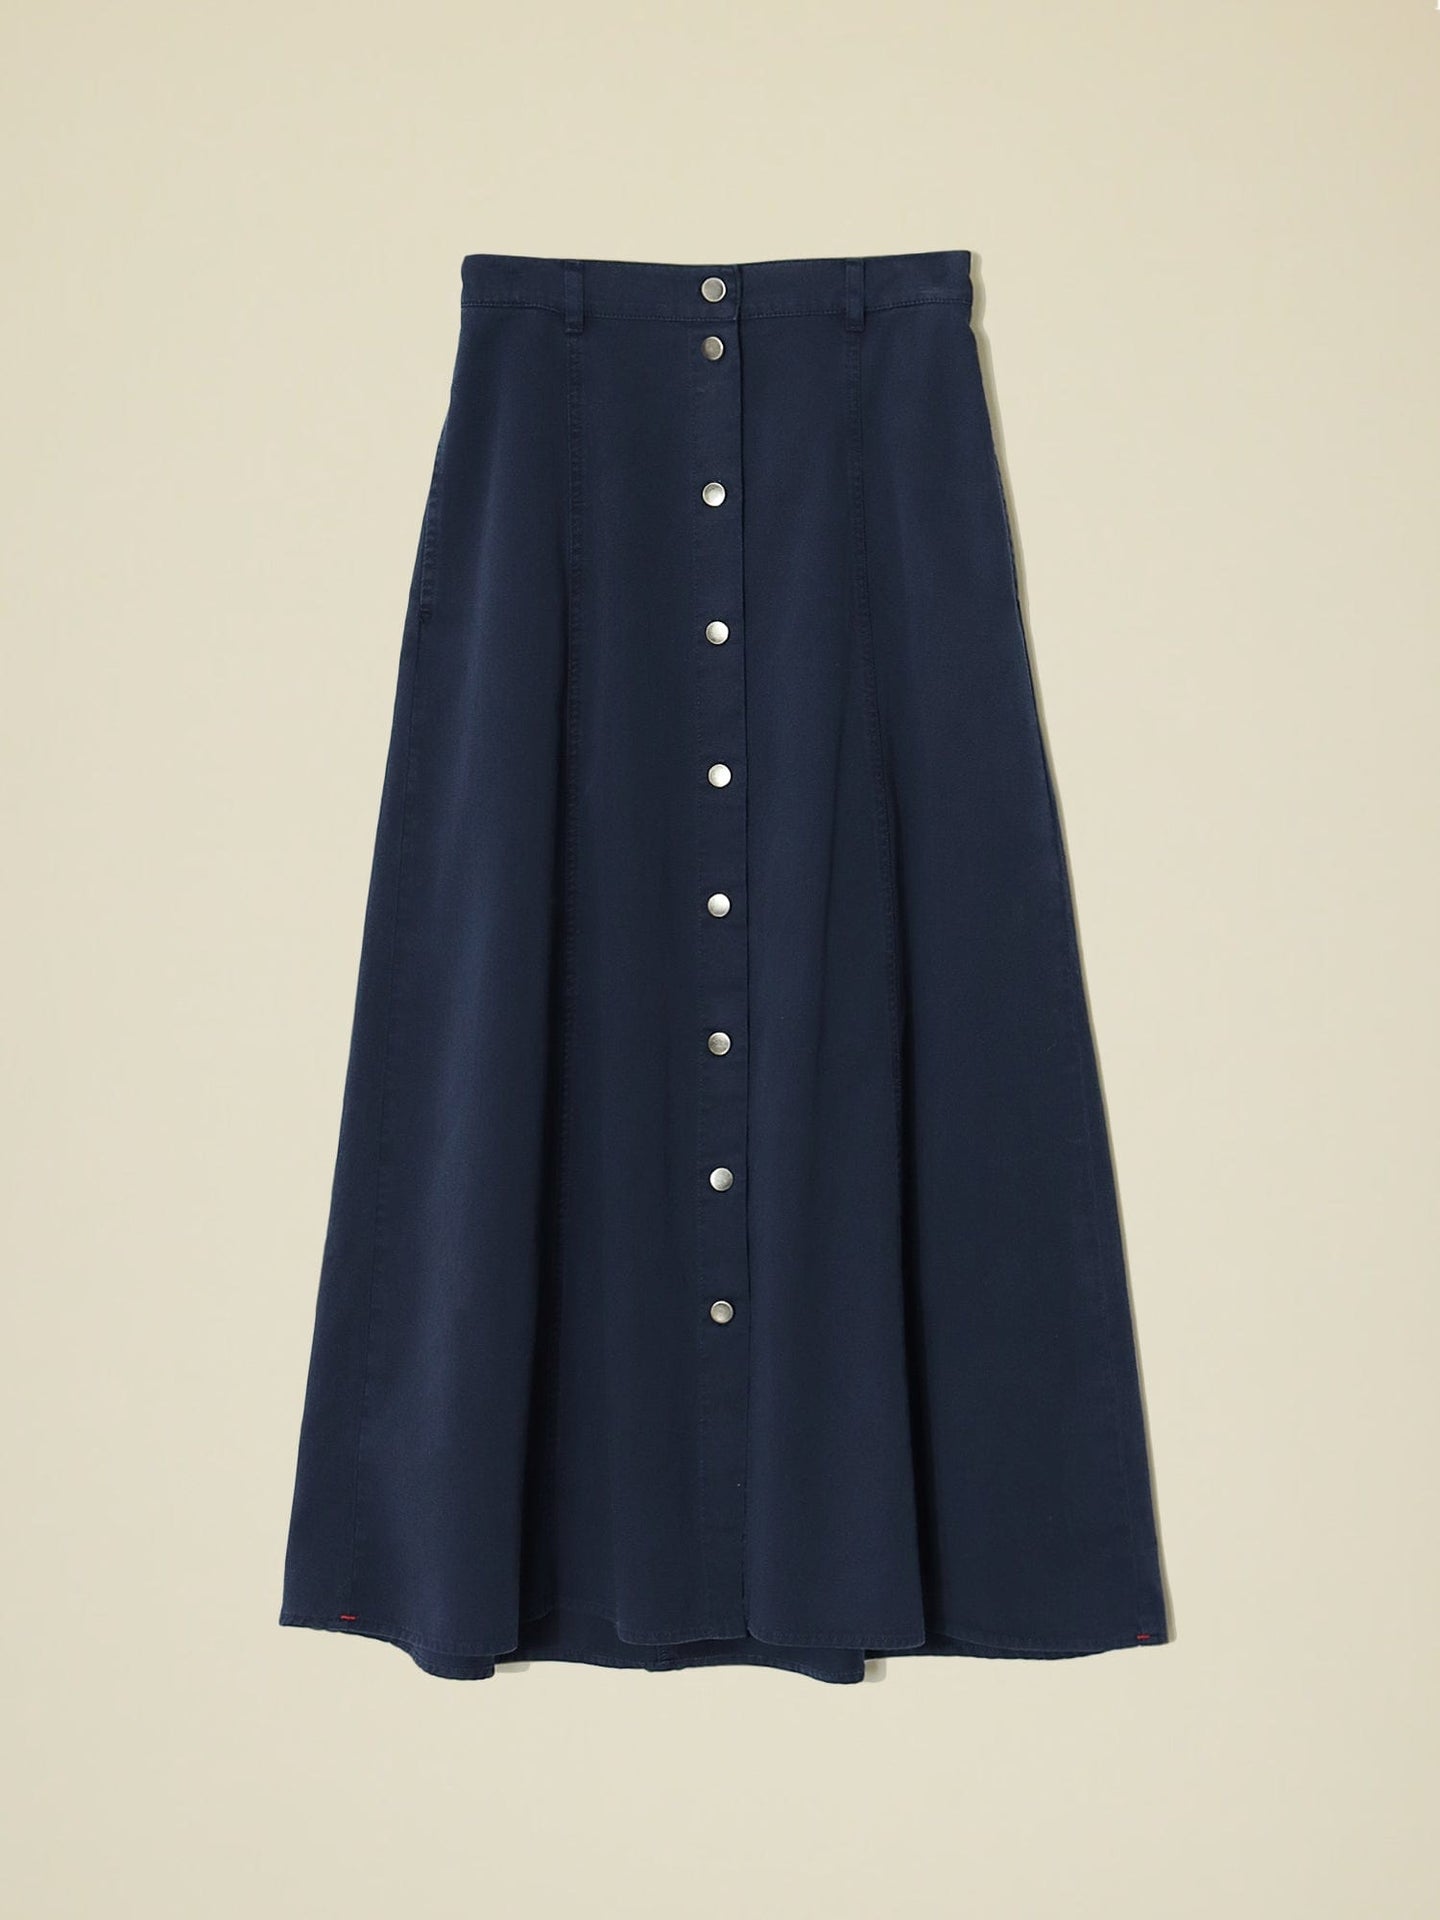 Skirt X357704 Spence Skirt Navy